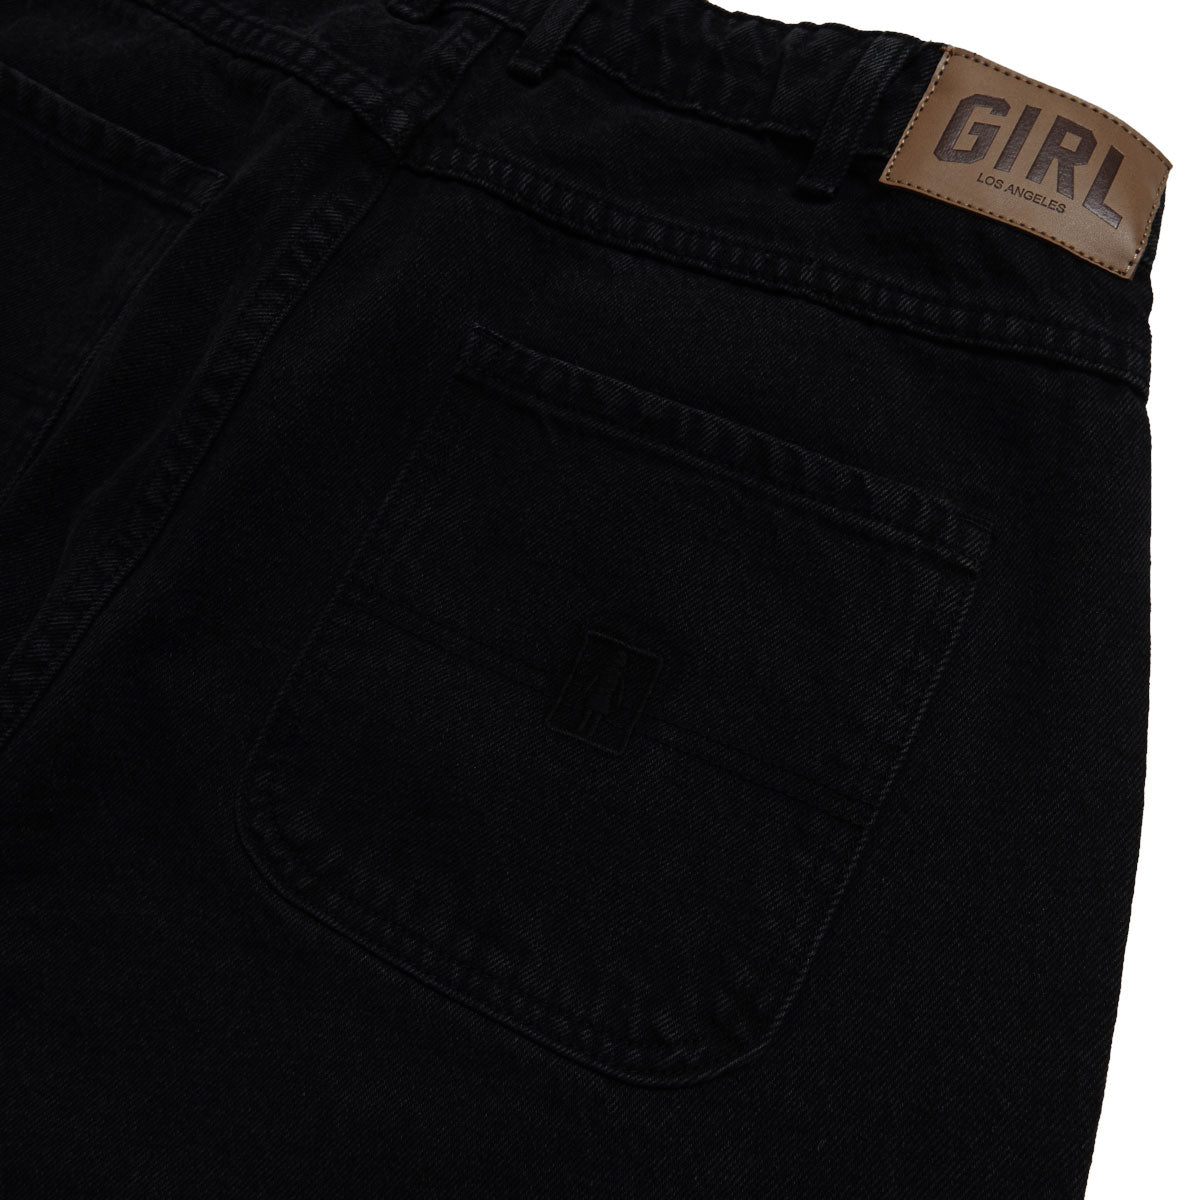 Girl Jeans - Washed Black image 5